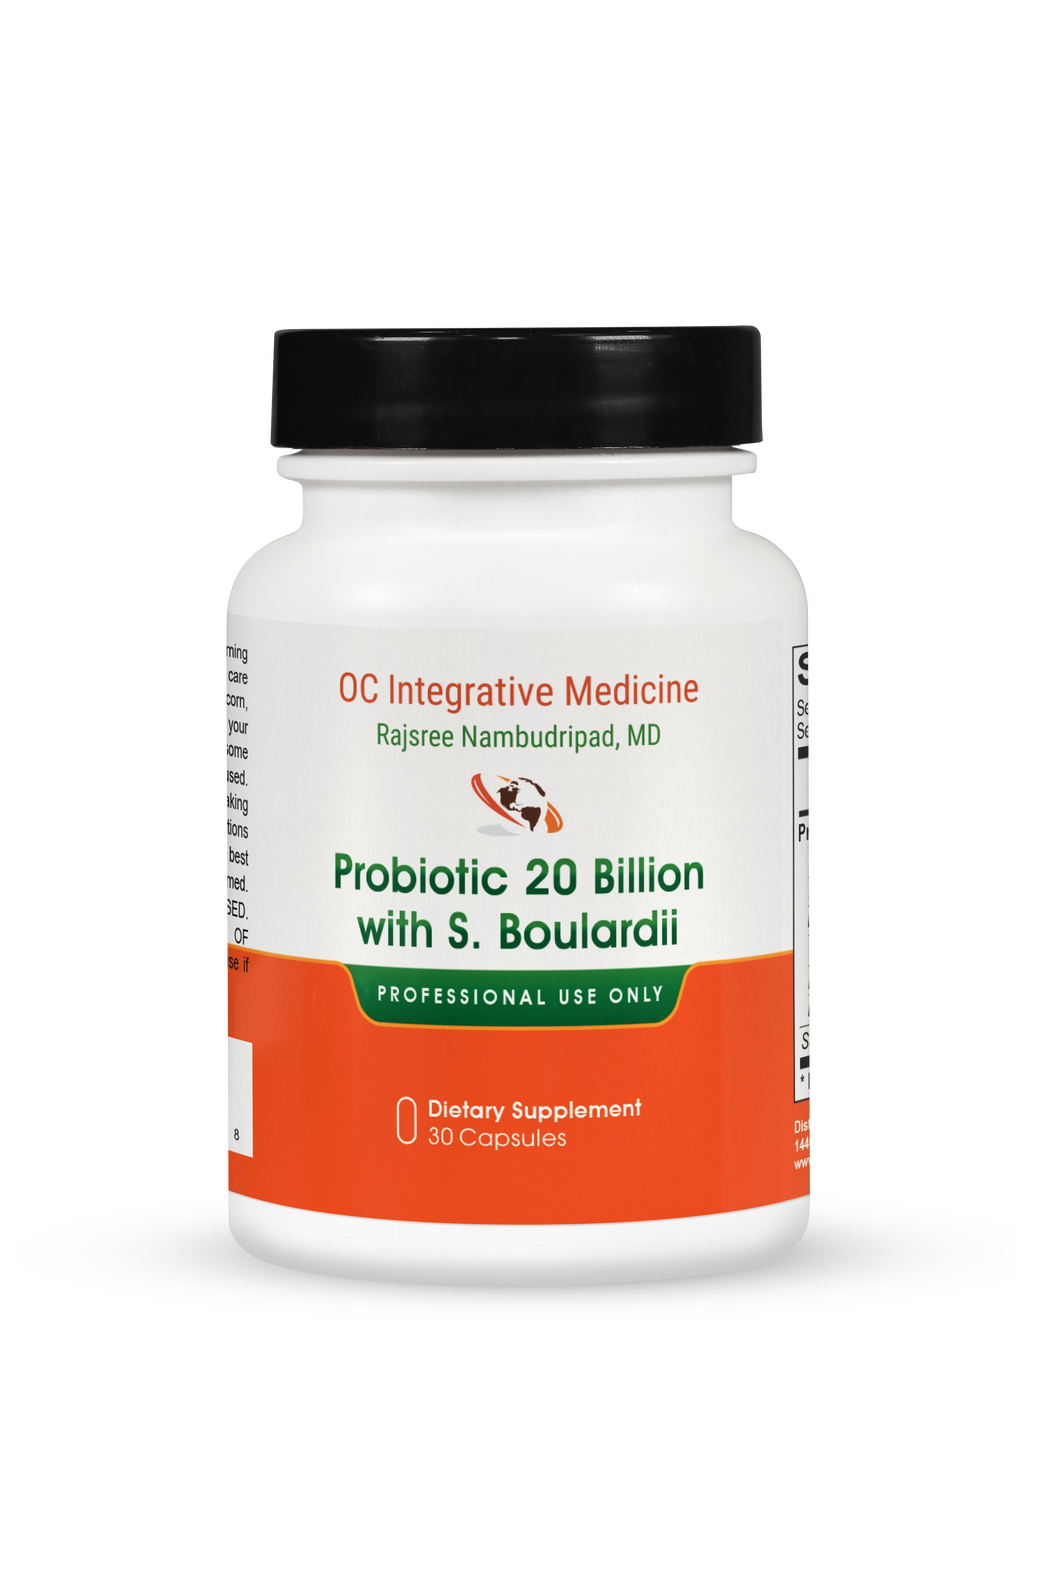 Probiotic 20 Billion with S. Boulardii